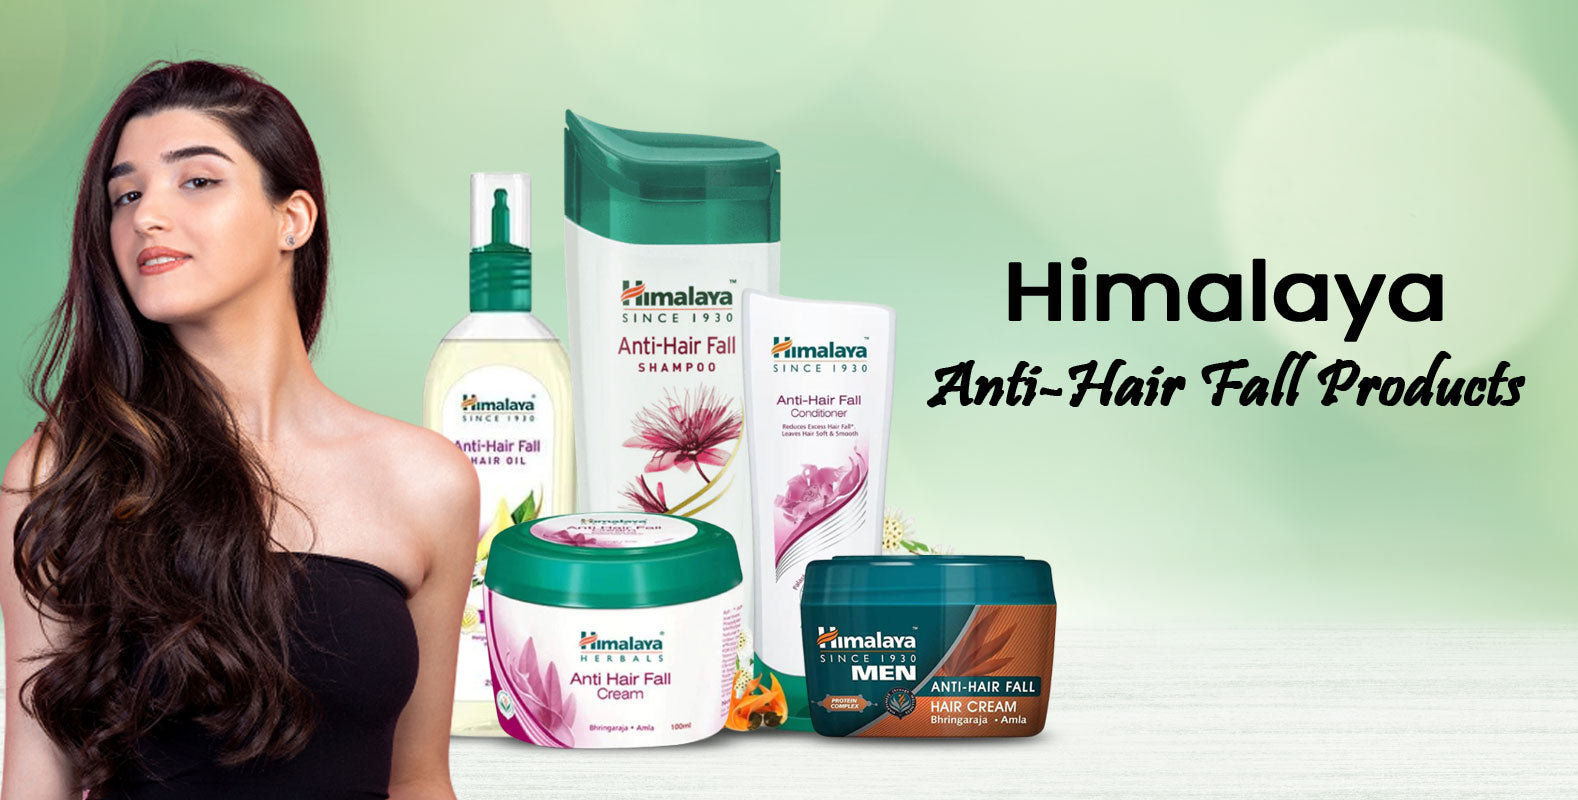 Himalaya Anti-Hair Fall Products